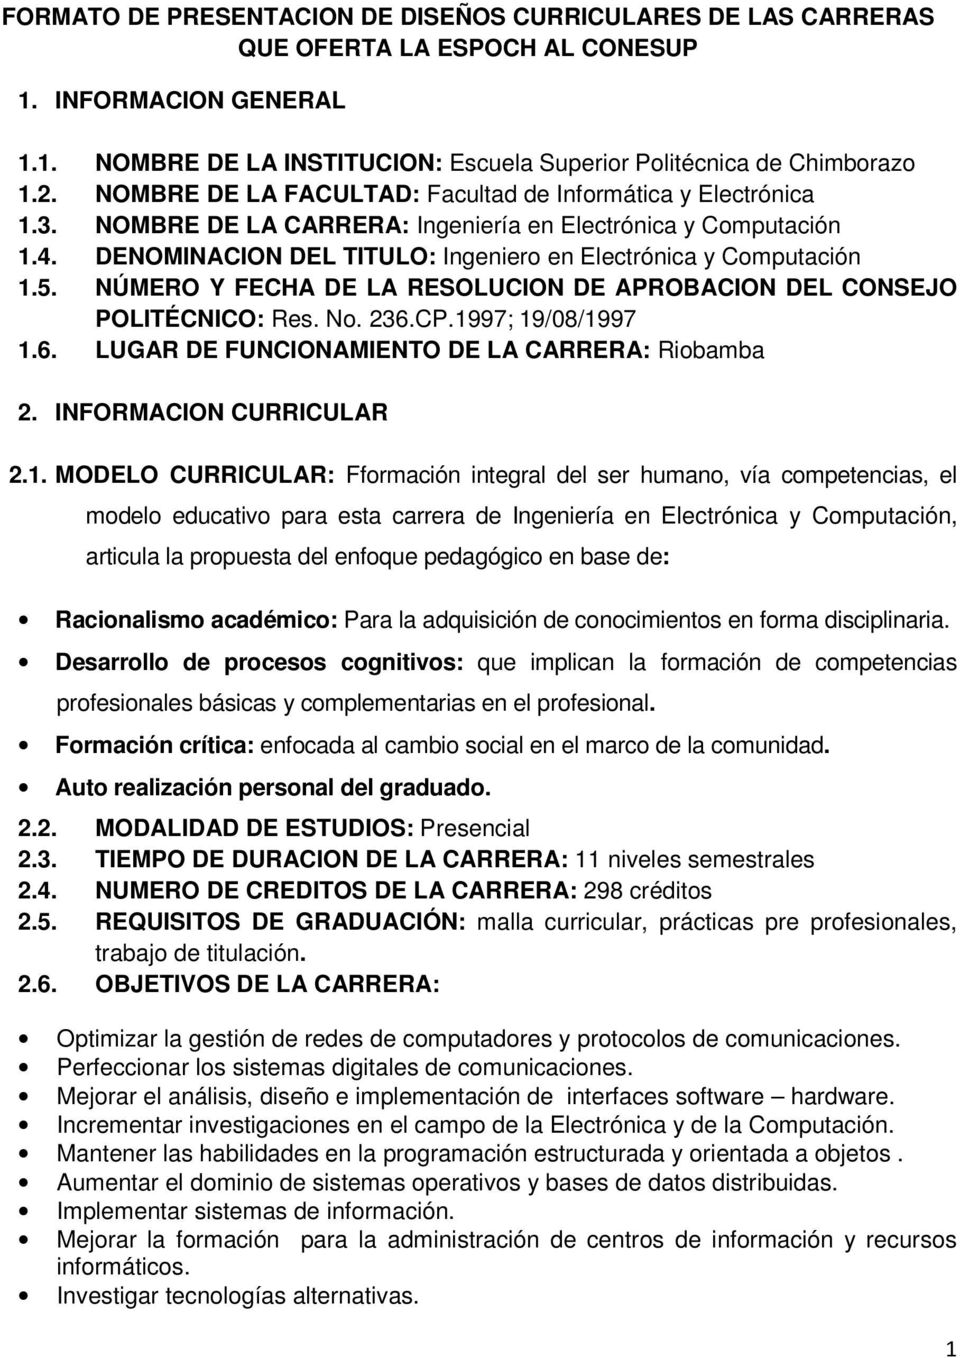 5. NÚMERO Y FECHA DE LA RESOLUCION DE APROBACION DEL CONSEJO POLITÉCNICO: Res. No. 236.CP.19